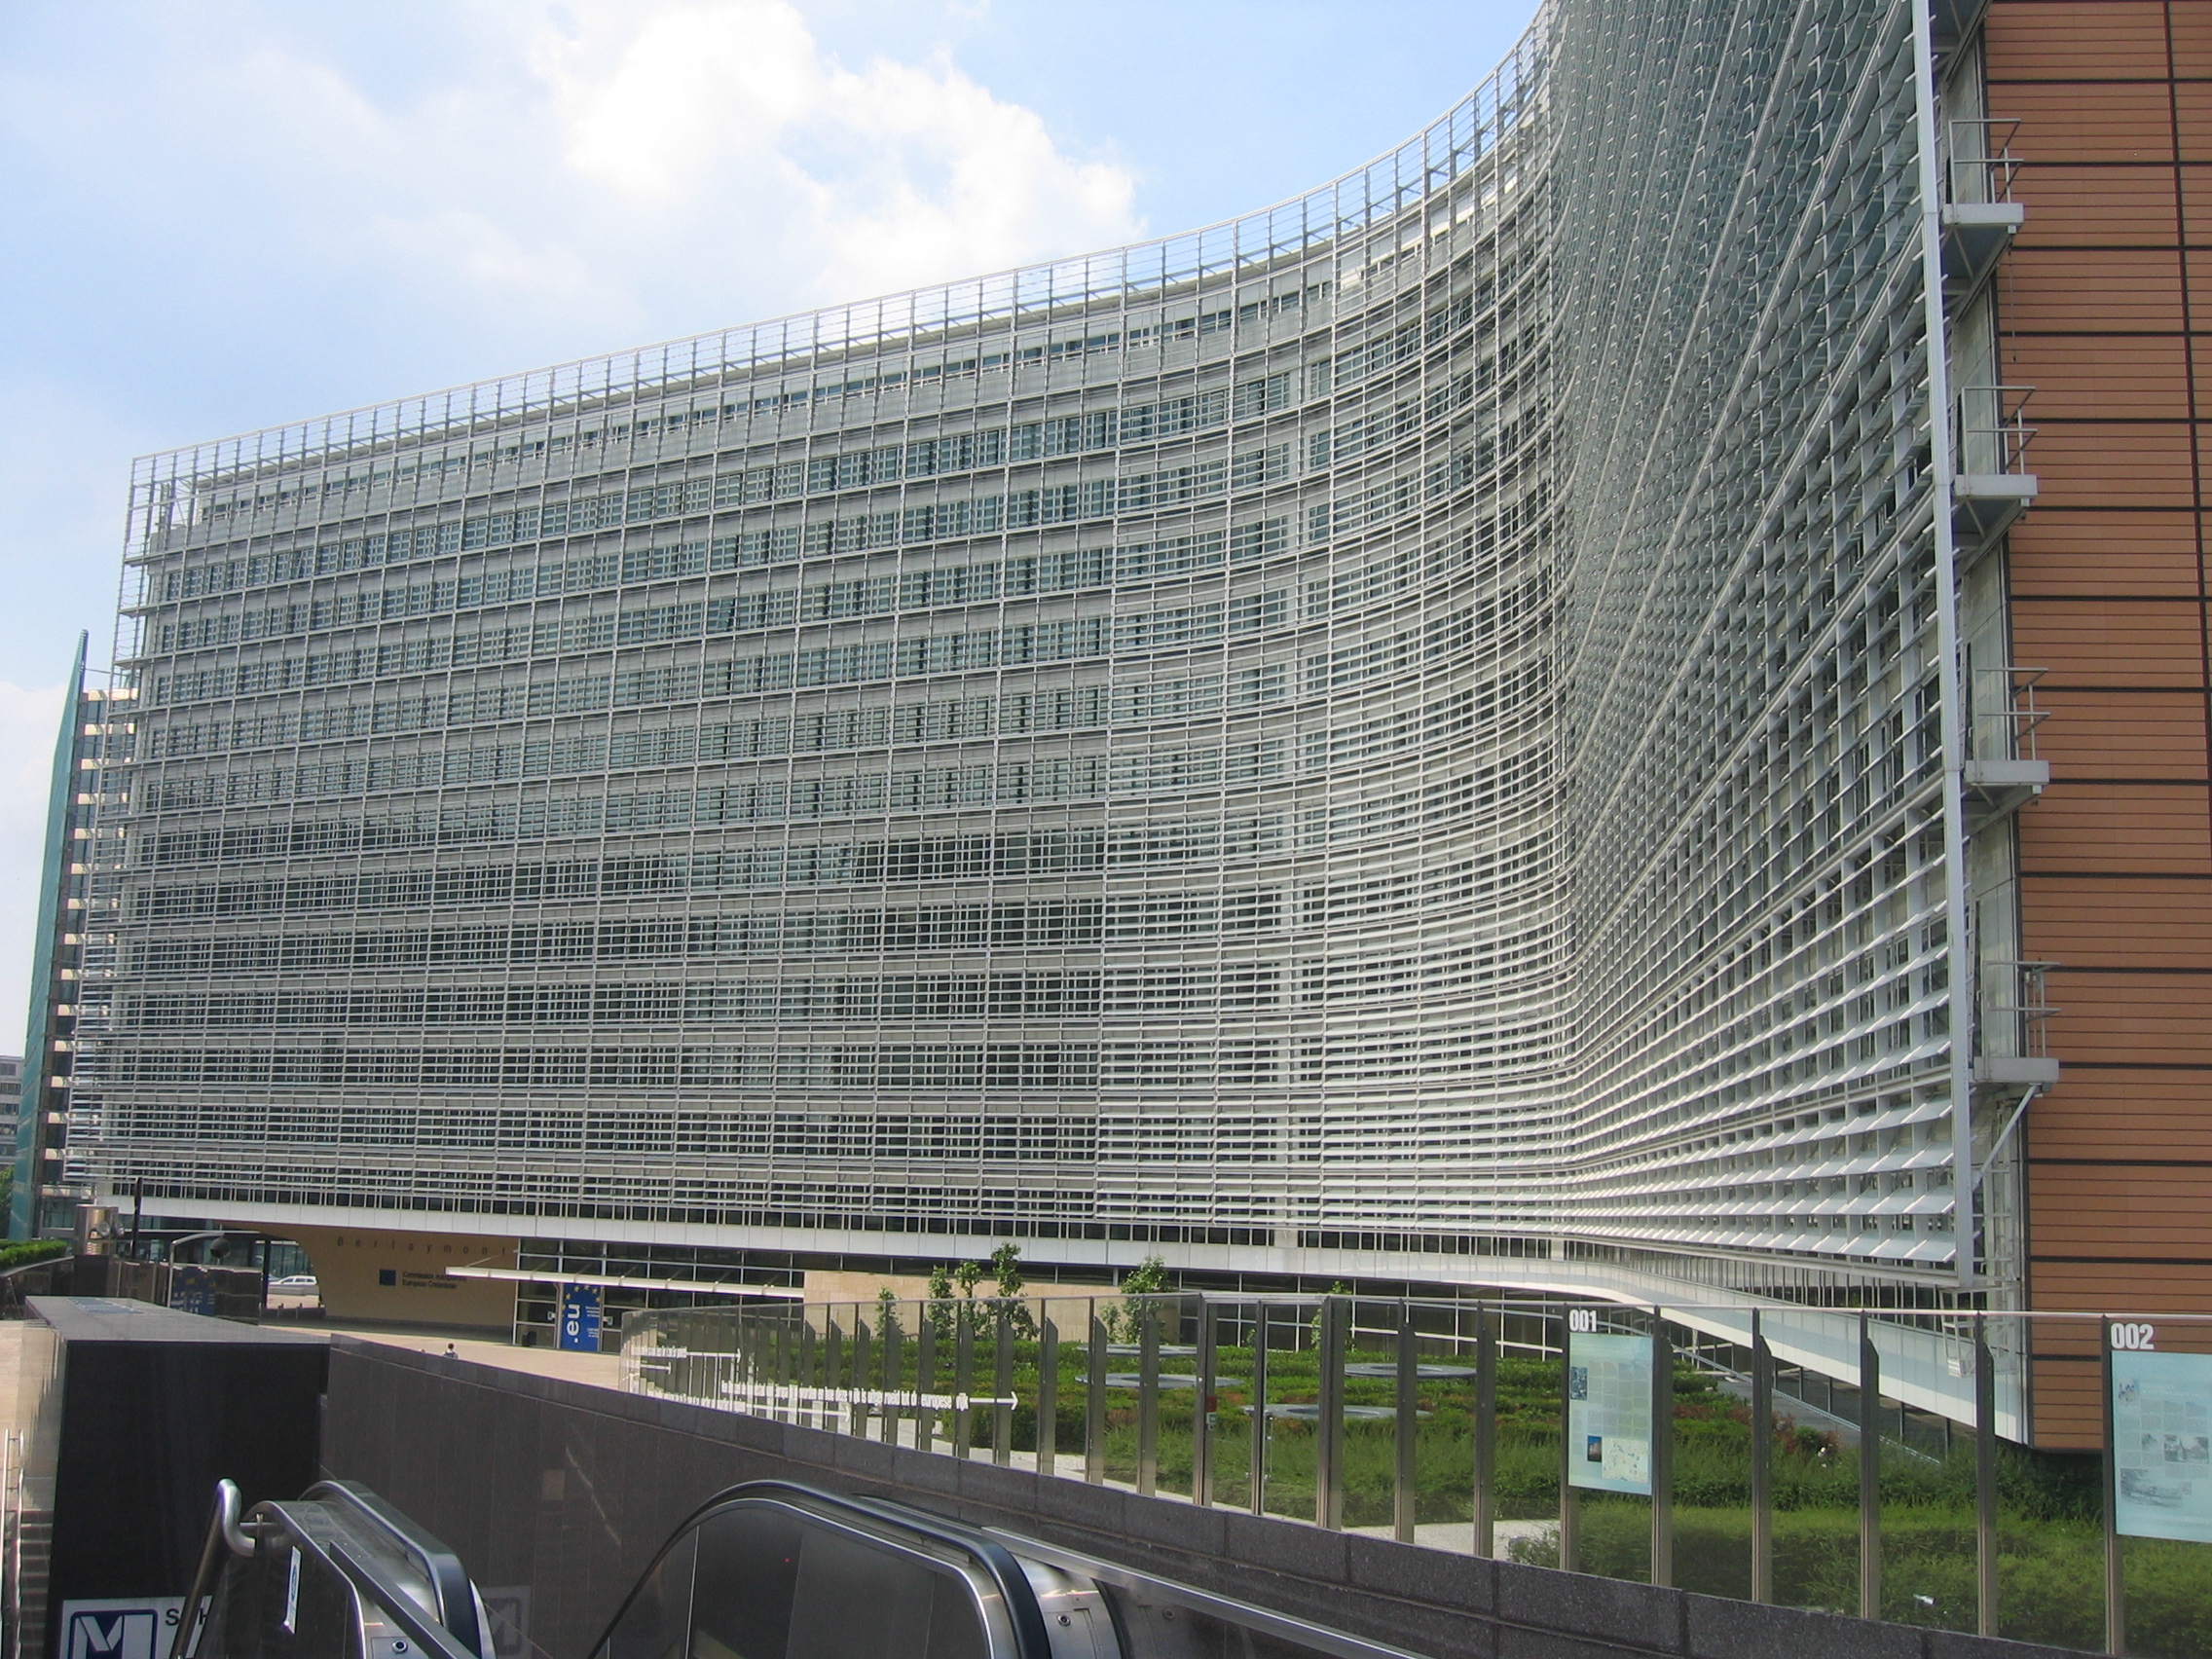 29 Ottobre 2014 finalmente l’accordo di partenariato tra italia e commissione EU